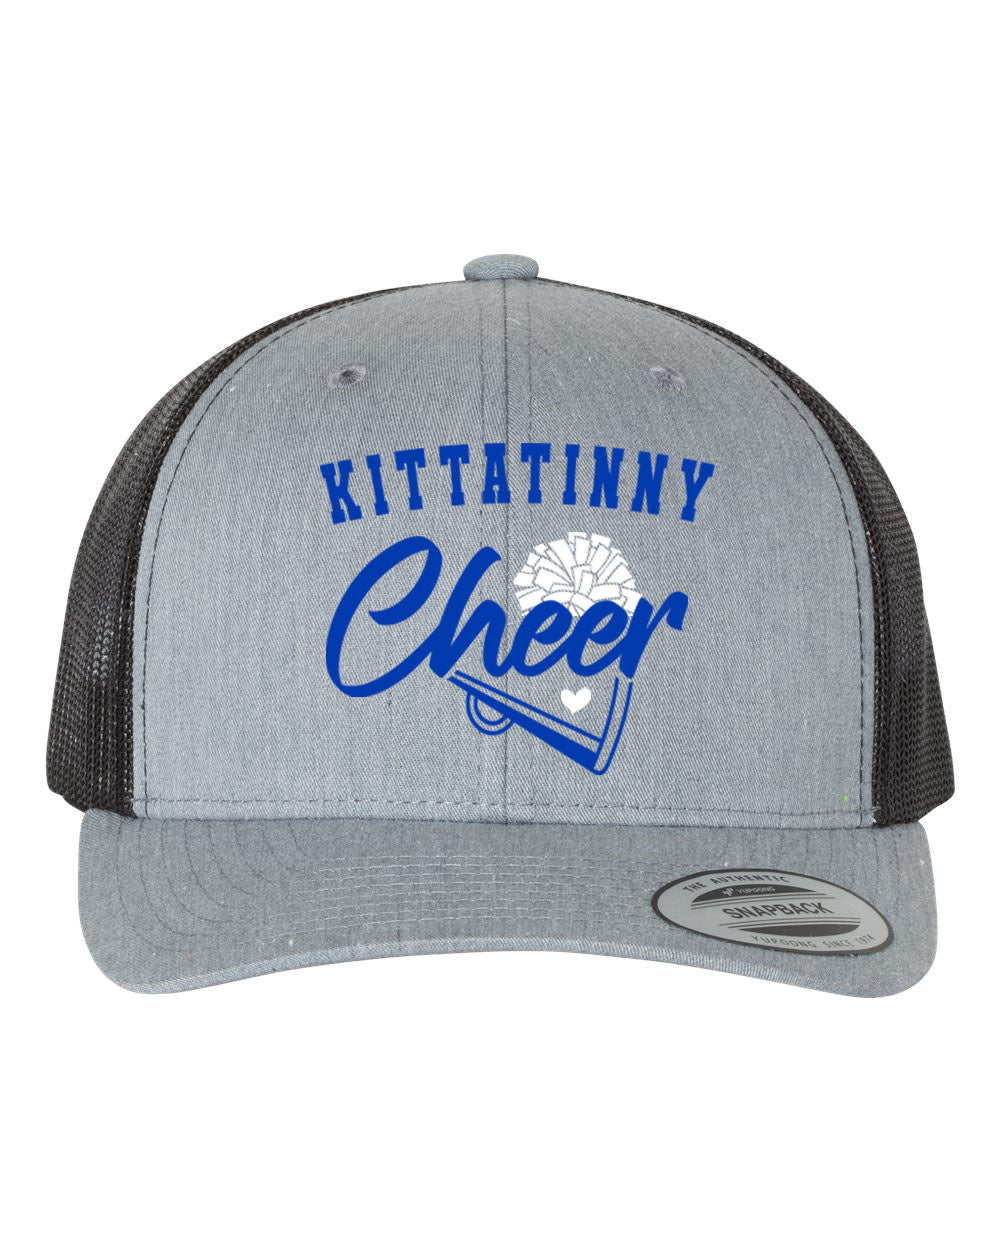 Kittatinny Cheer Design 9 Trucker Hat